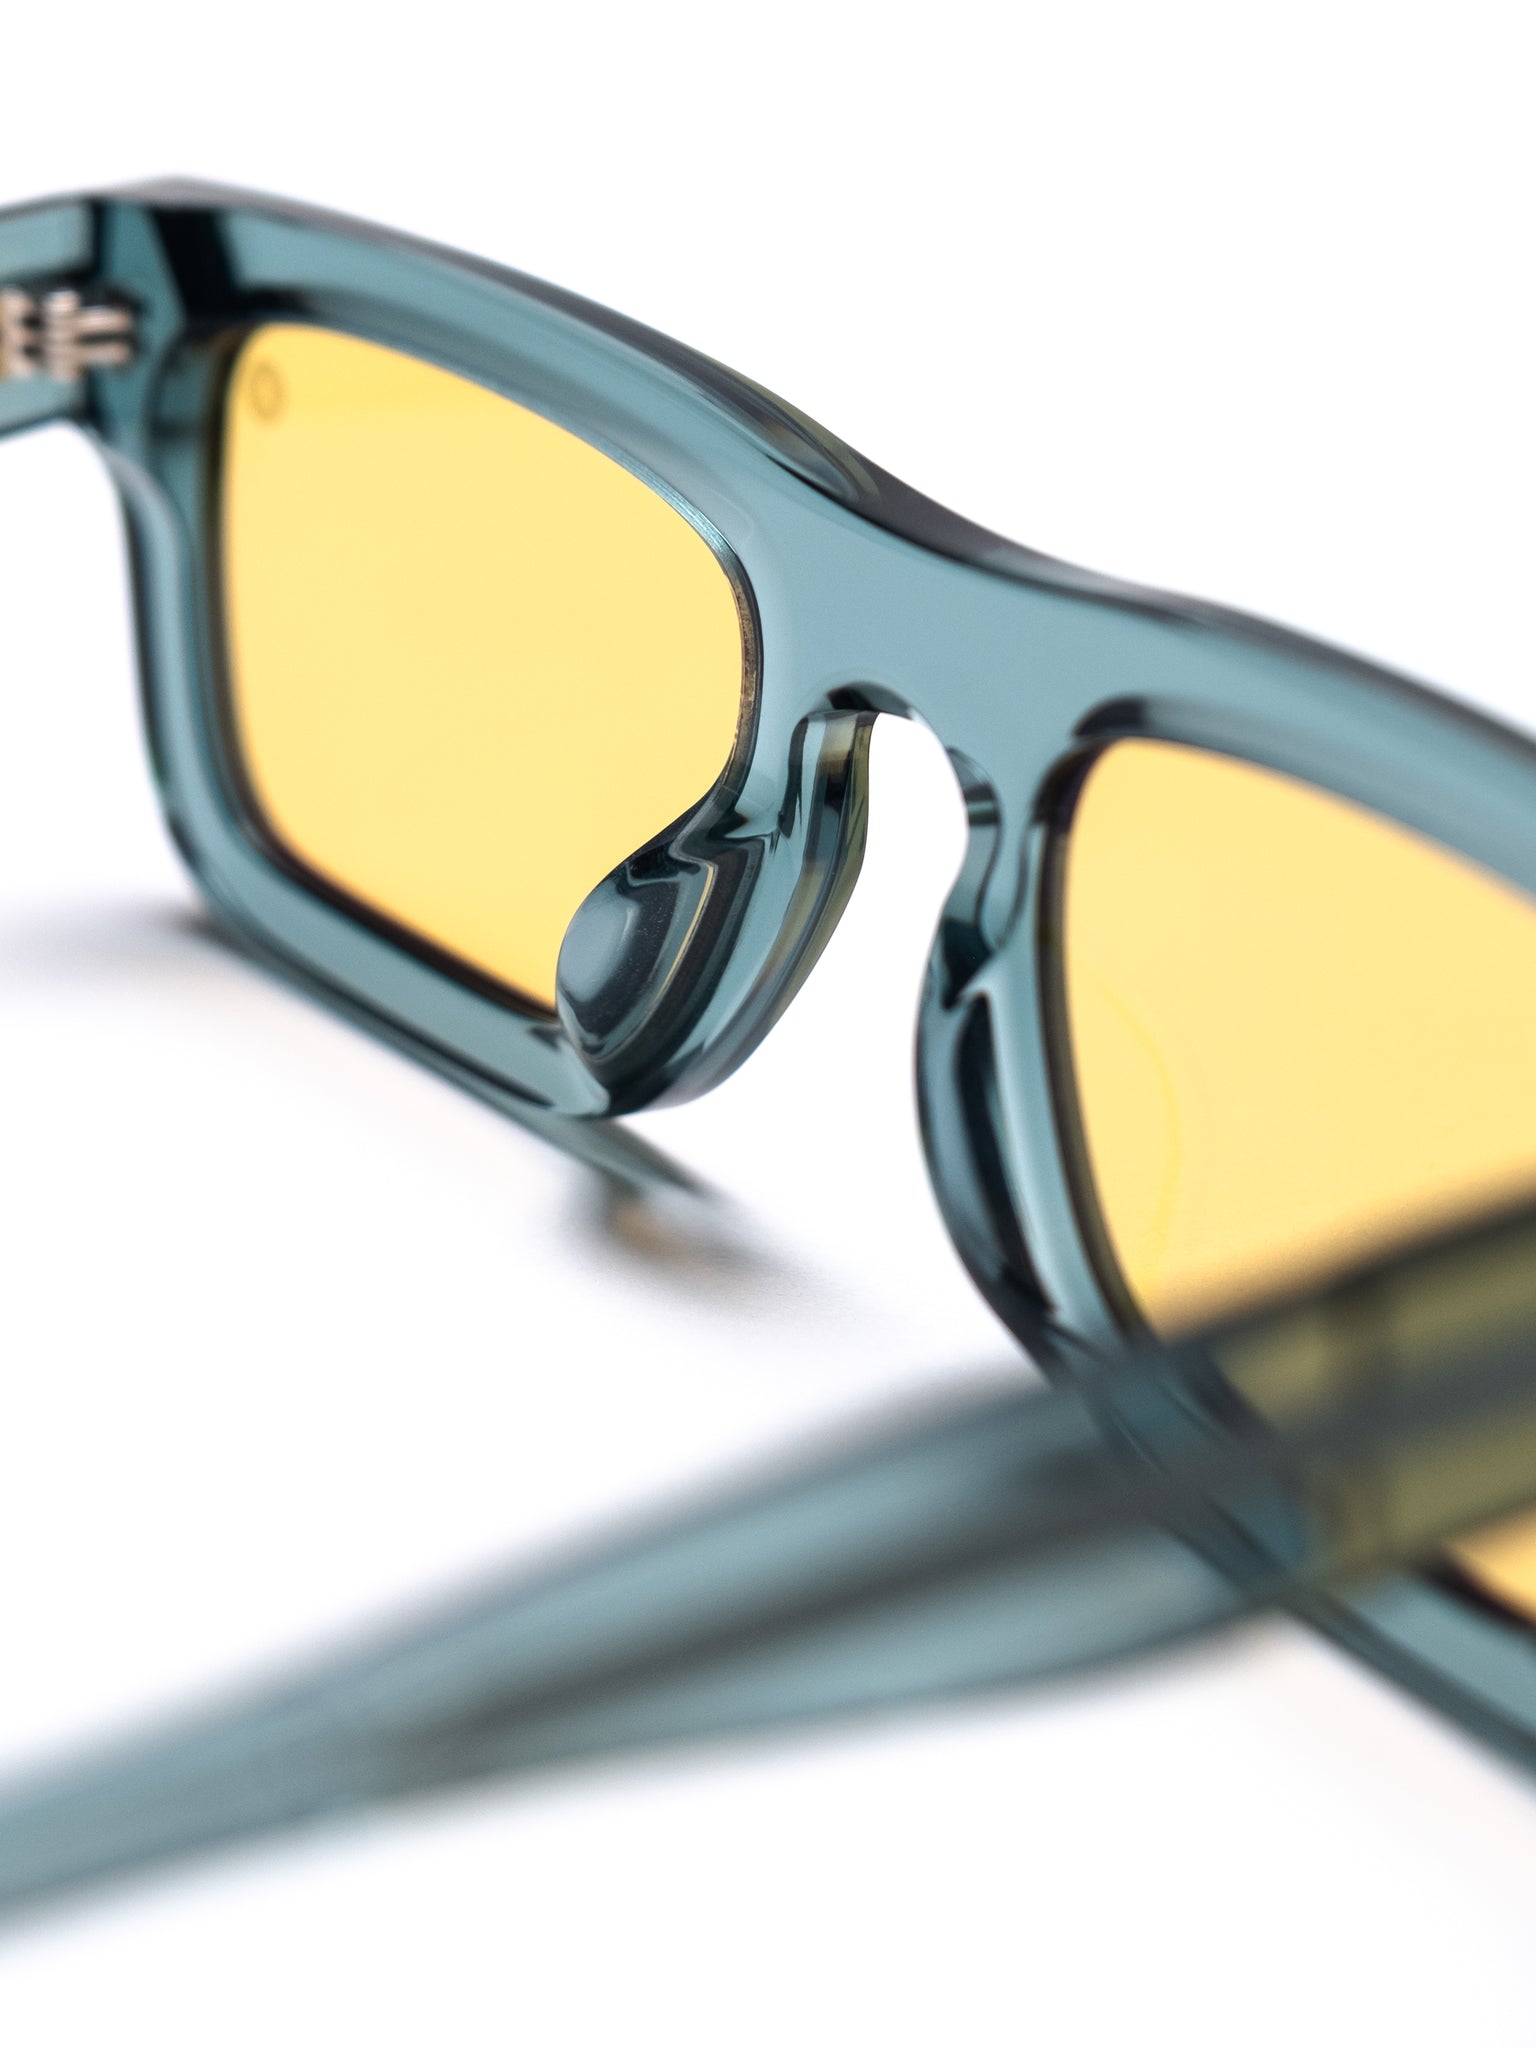 Square Sunglasses	Amazon